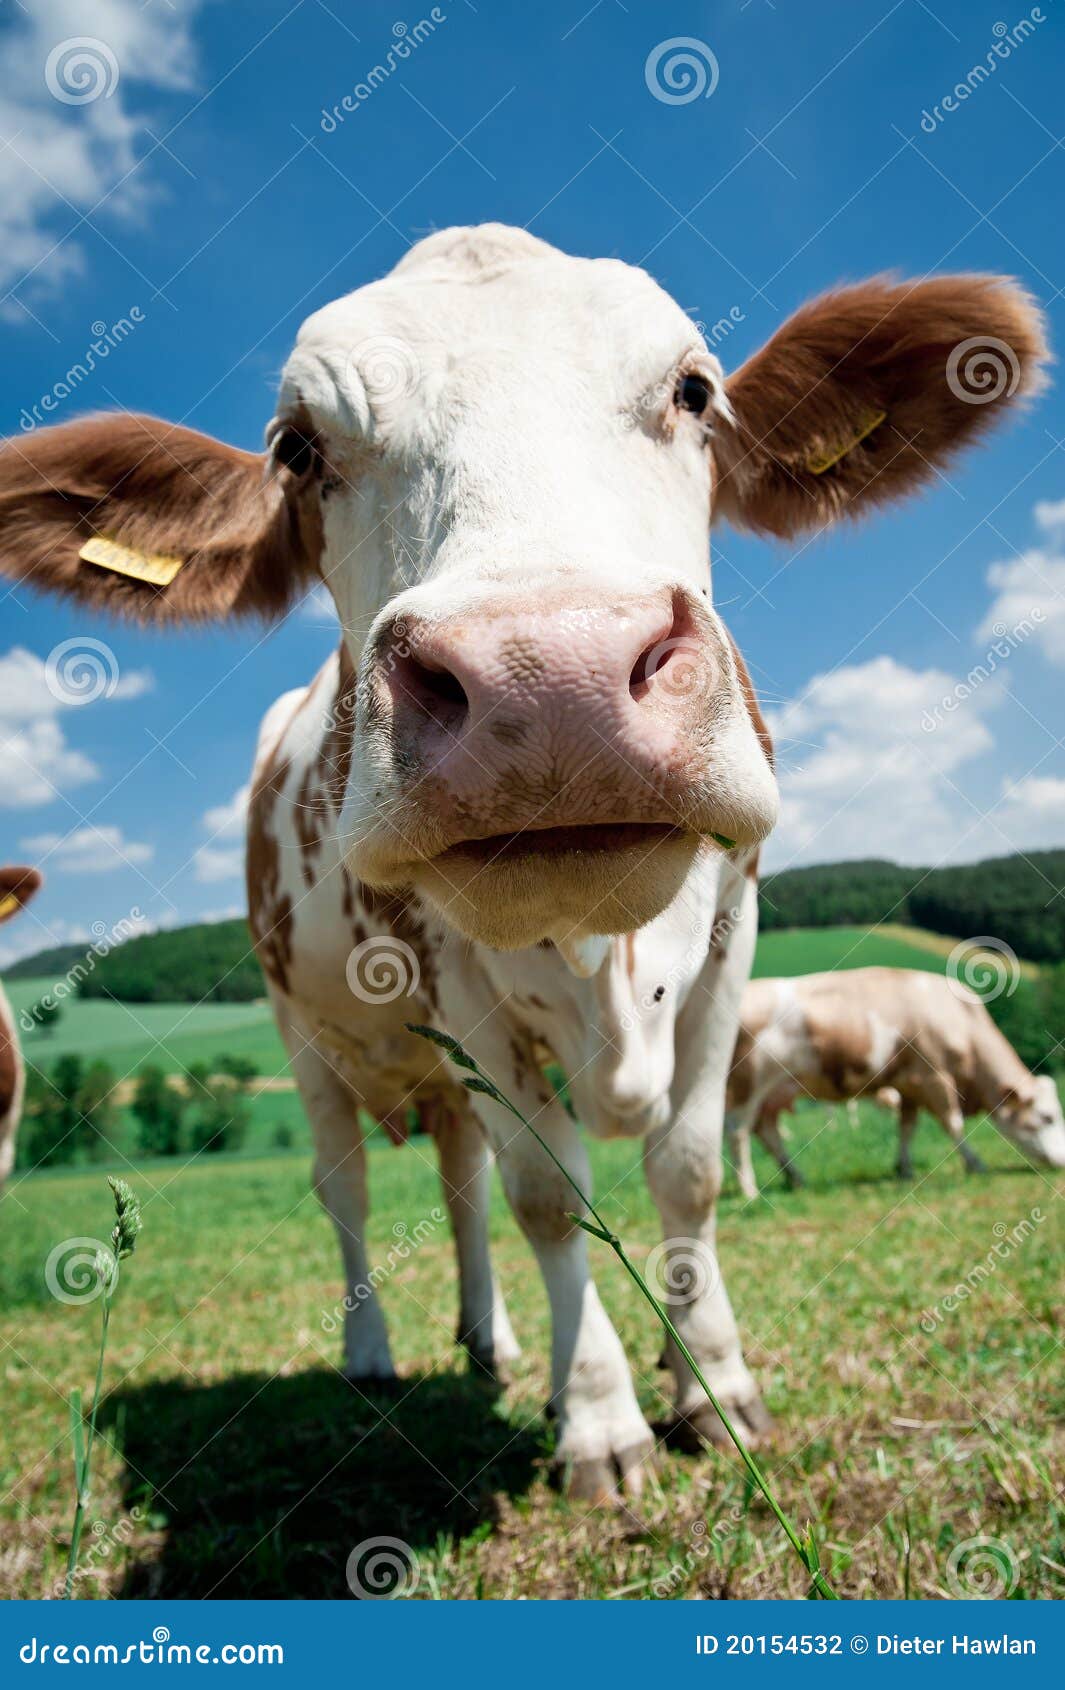 母牛鼻子 库存照片. 图片 包括有 贝多芬, 乡下, 表面, 特写镜头, 问题的, 蓝色, 乐趣, 牛奶 - 25828832